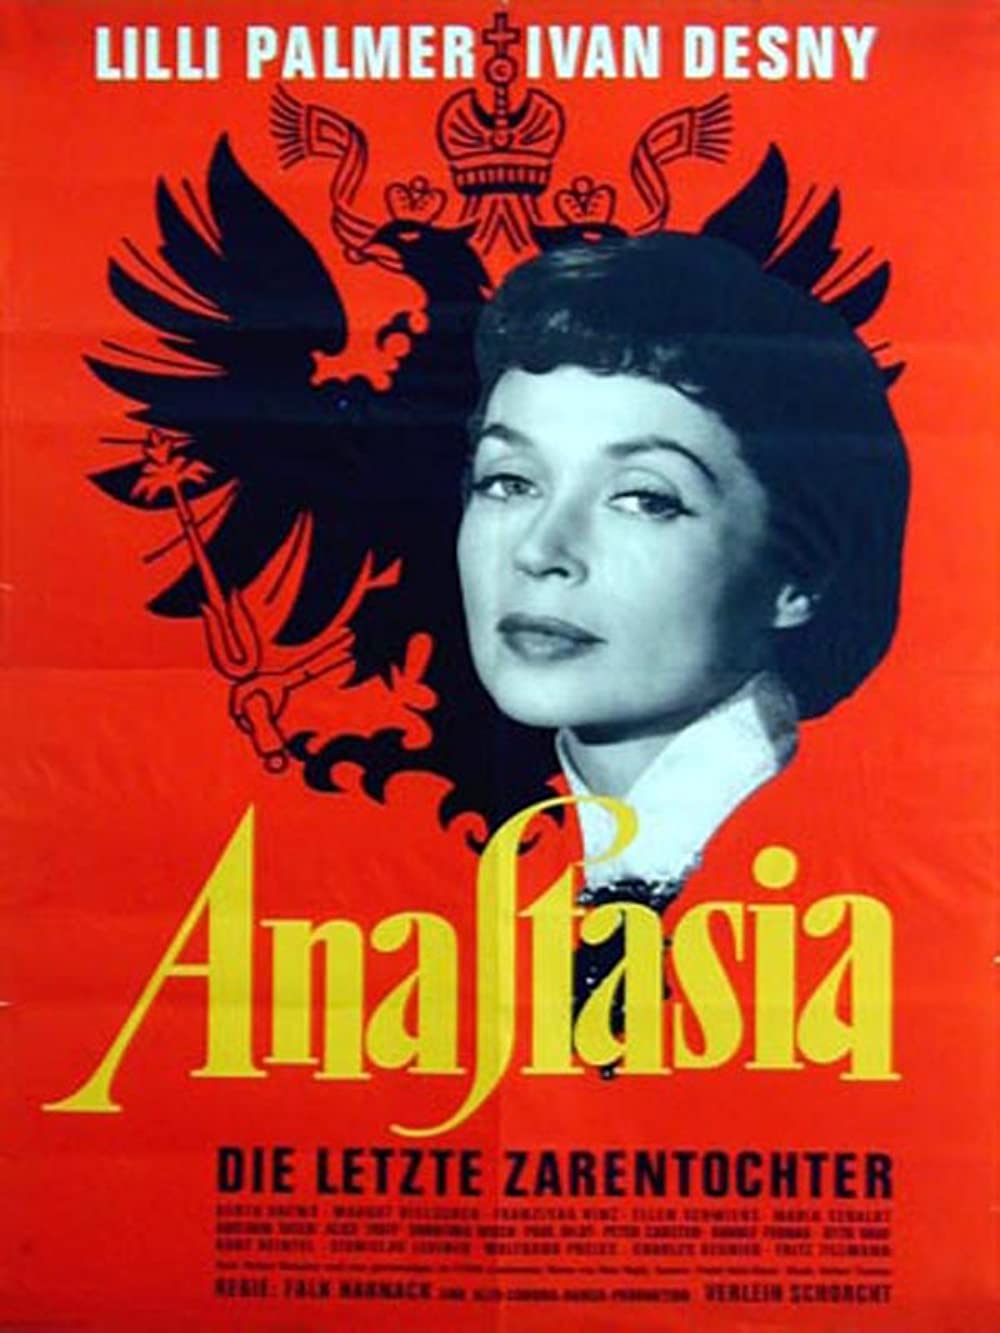 Anastasia, die letzte Zarentochter (1956)